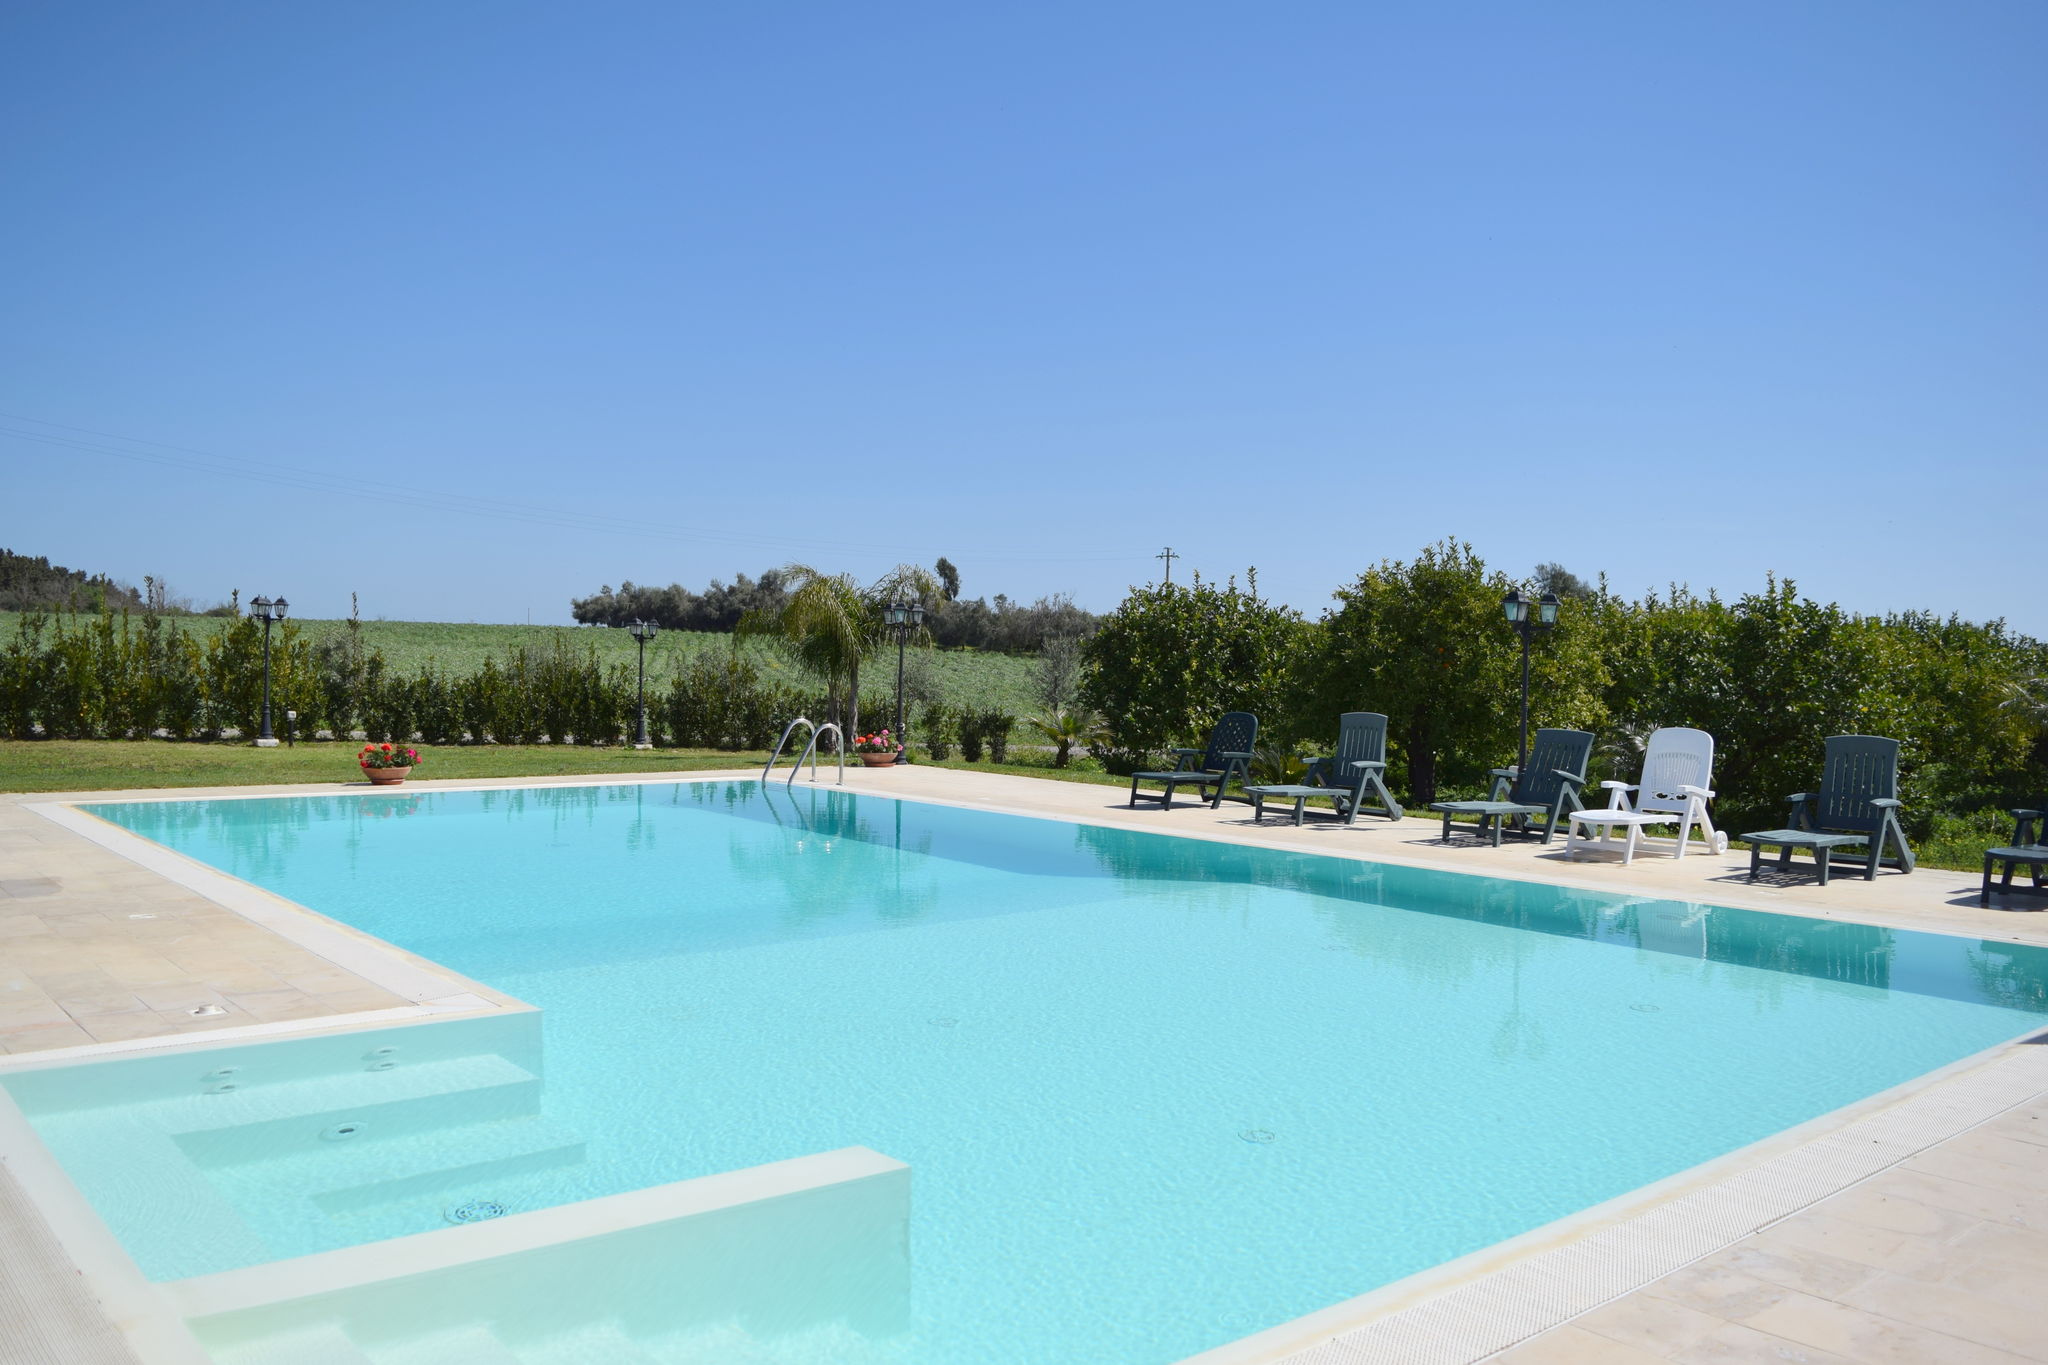 Luxuriöses Ferienhaus mit Swimmingpool in Syrakus, Italien